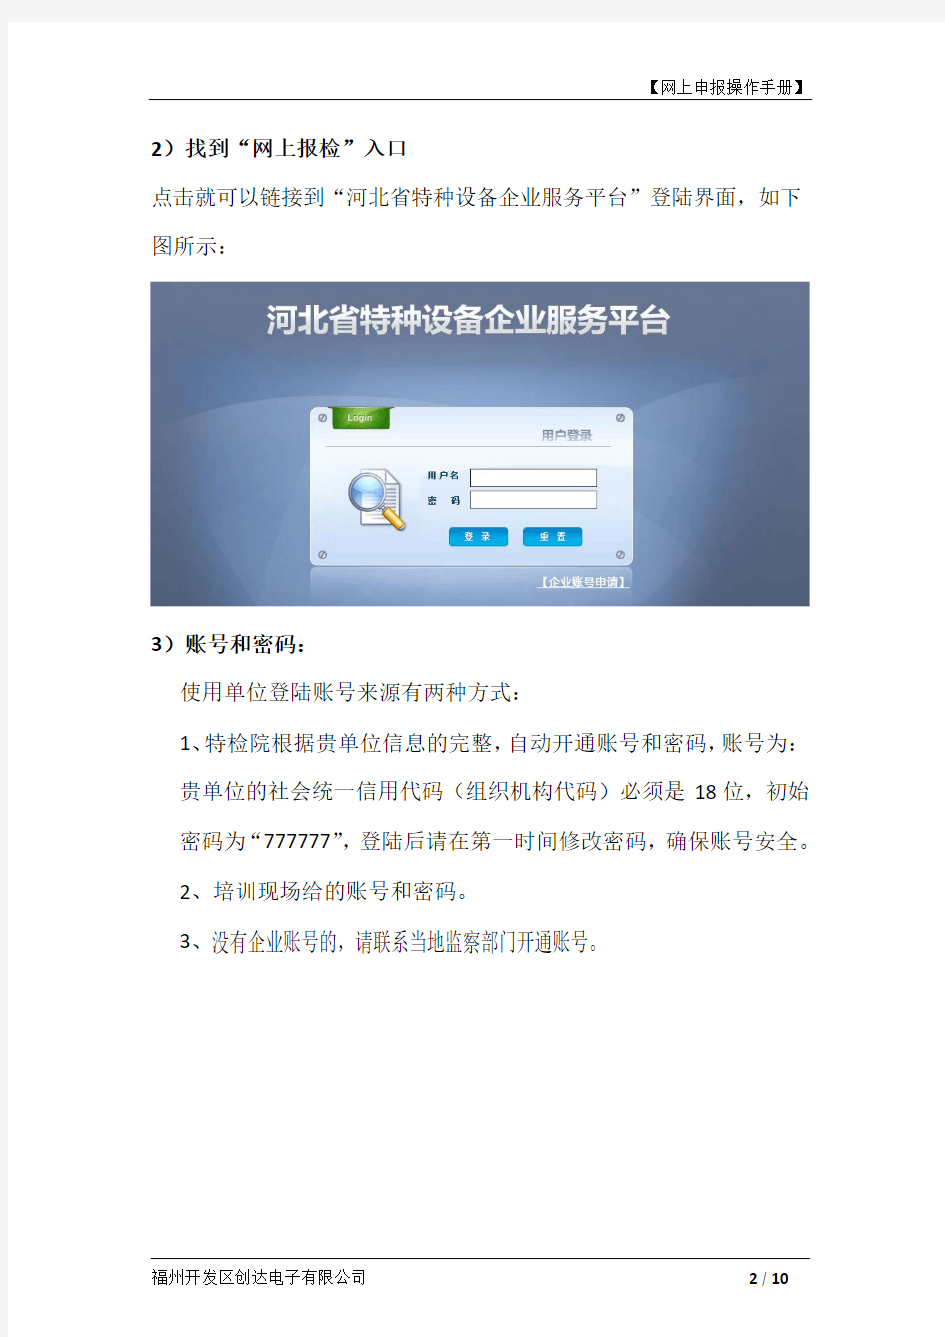 河北省特种设备网上申报 使用操作手册